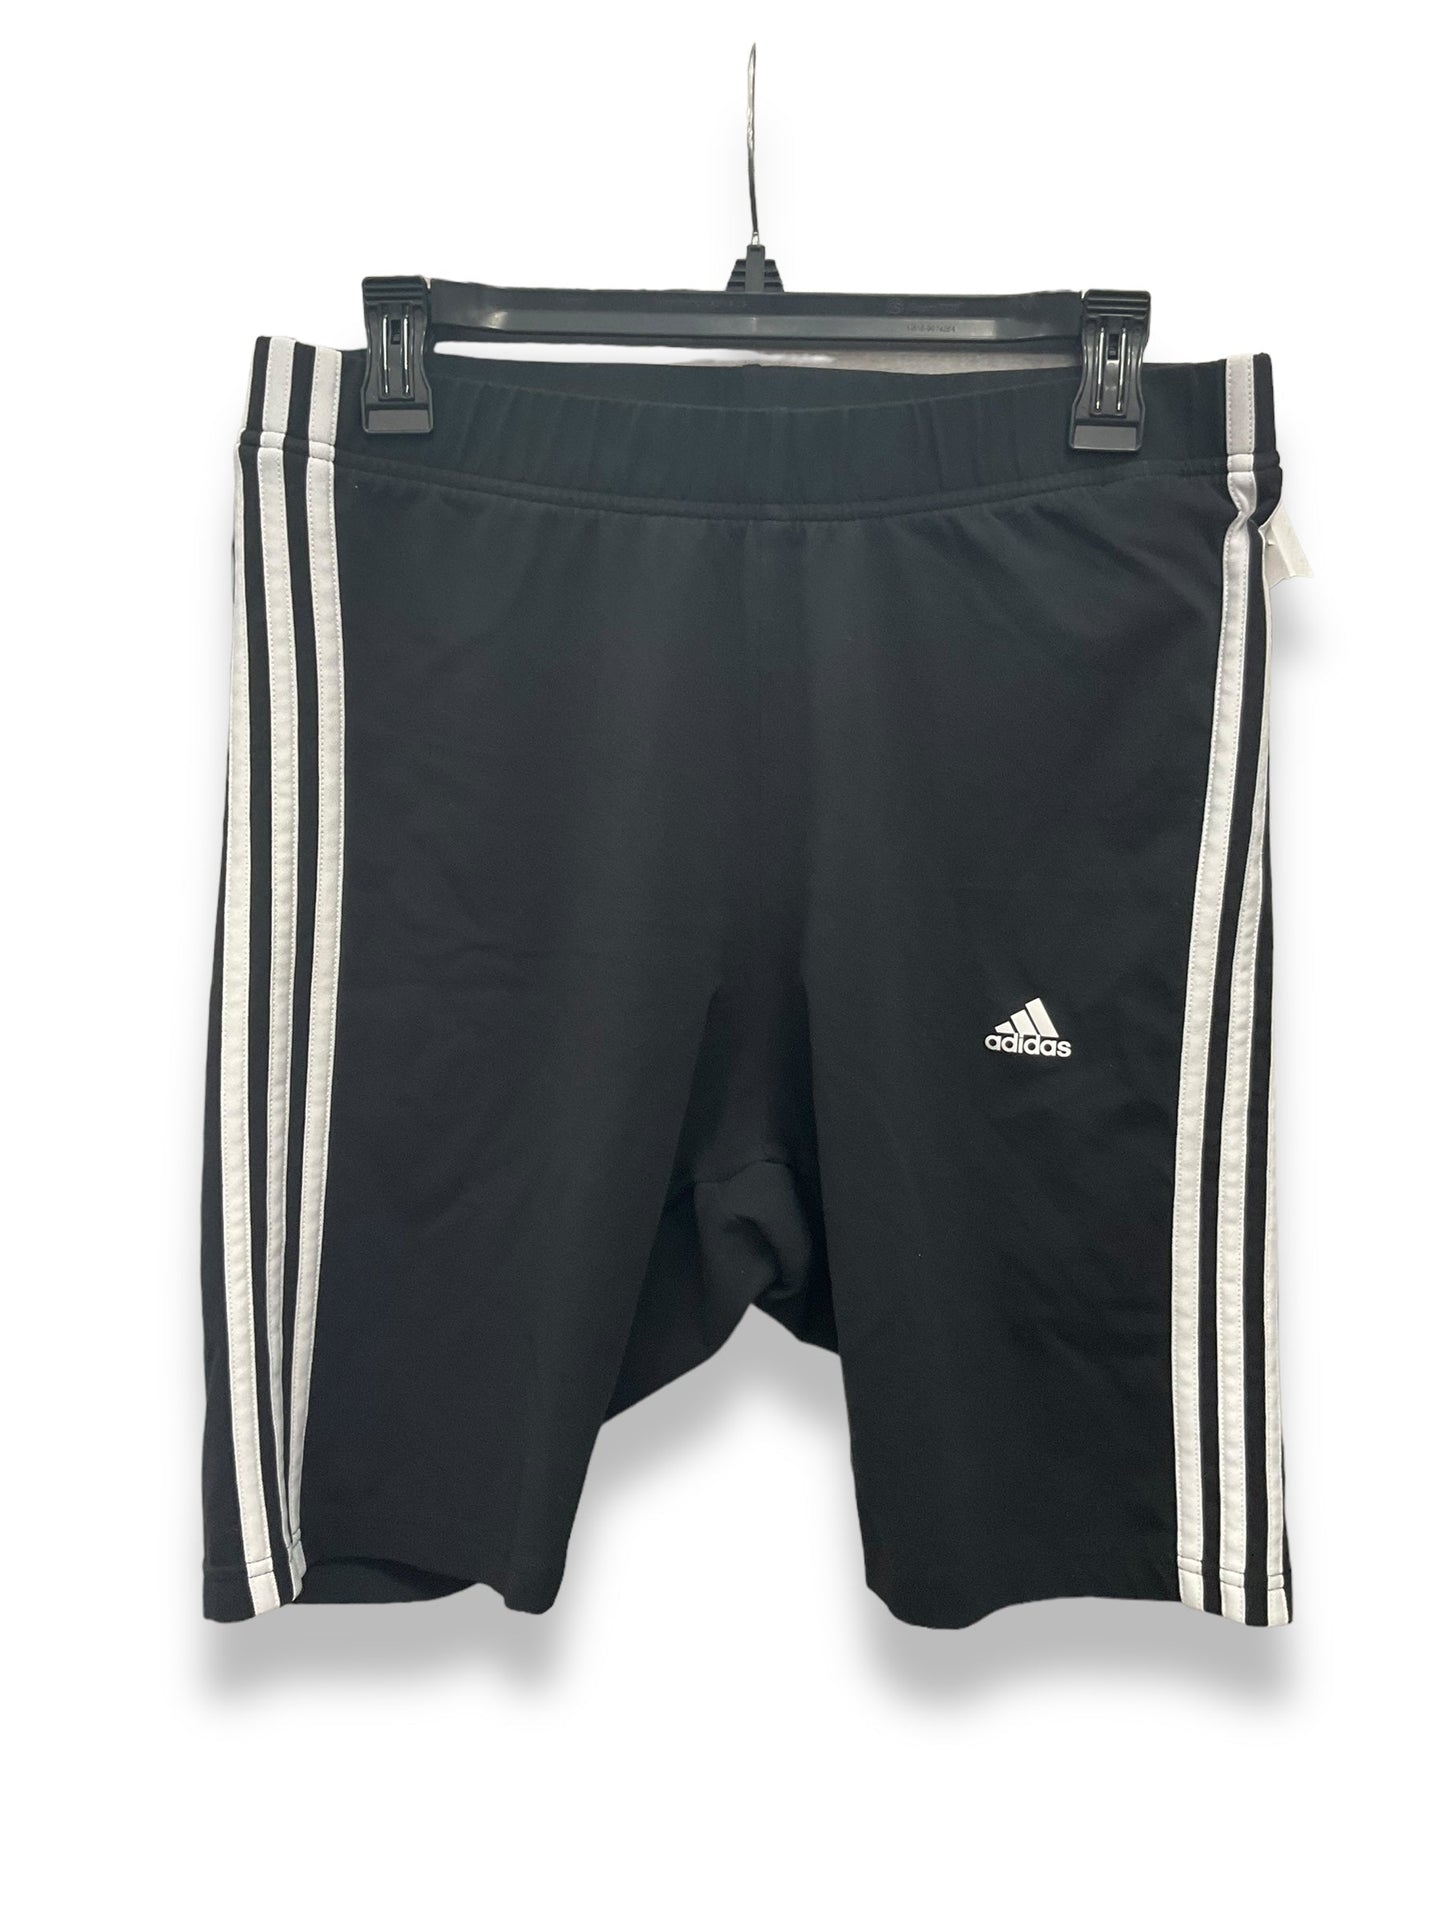 Black Athletic Shorts Adidas, Size 2x